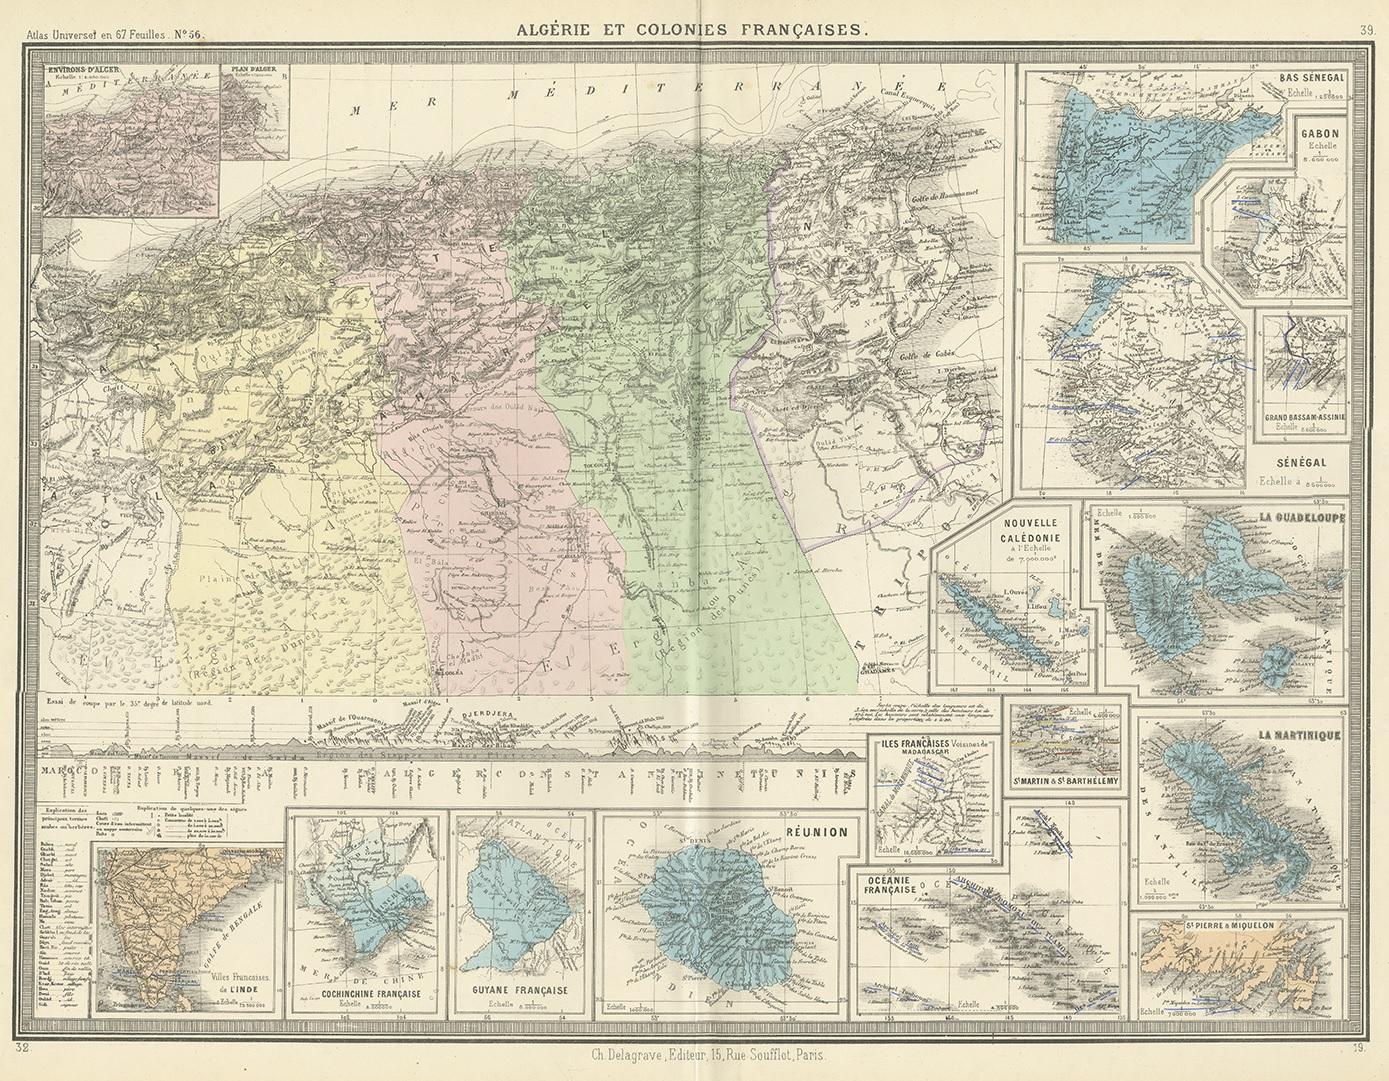 Antique map titled 'Algérie et Colonies Francaises'. Large map of Algeria and the French Colonies. This map originates from 'Atlas de Géographie Moderne Physique et Politique' by A. Levasseur. Published 1875.